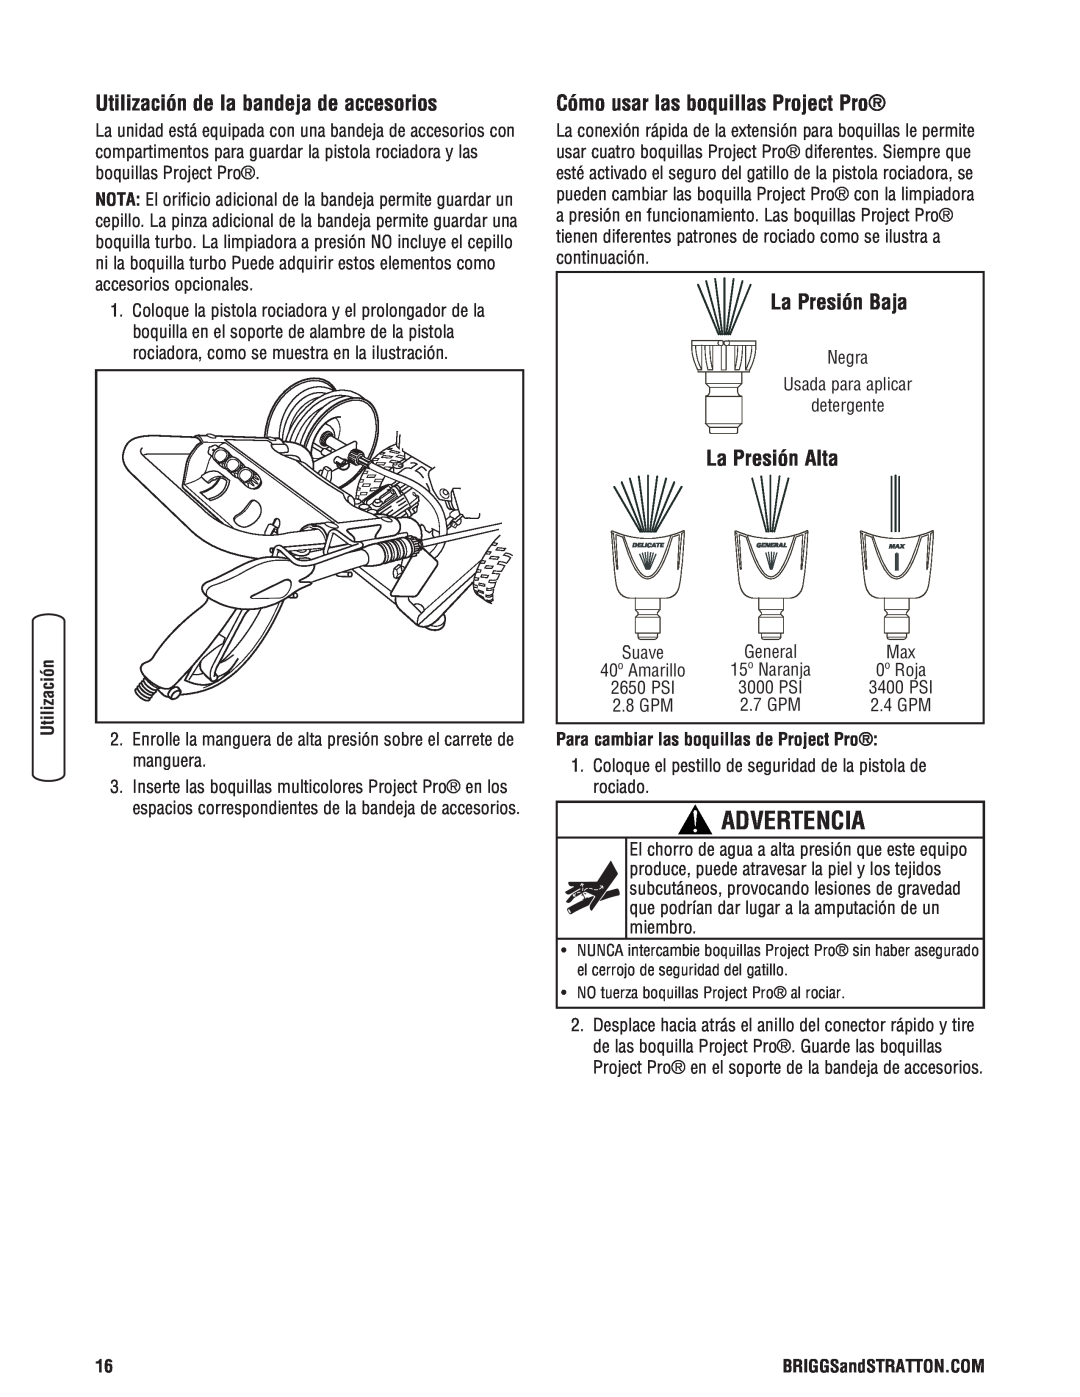 Briggs & Stratton 020364-0 manual Advertencia, Utilización de la bandeja de accesorios, Cómo usar las boquillas Project Pro 